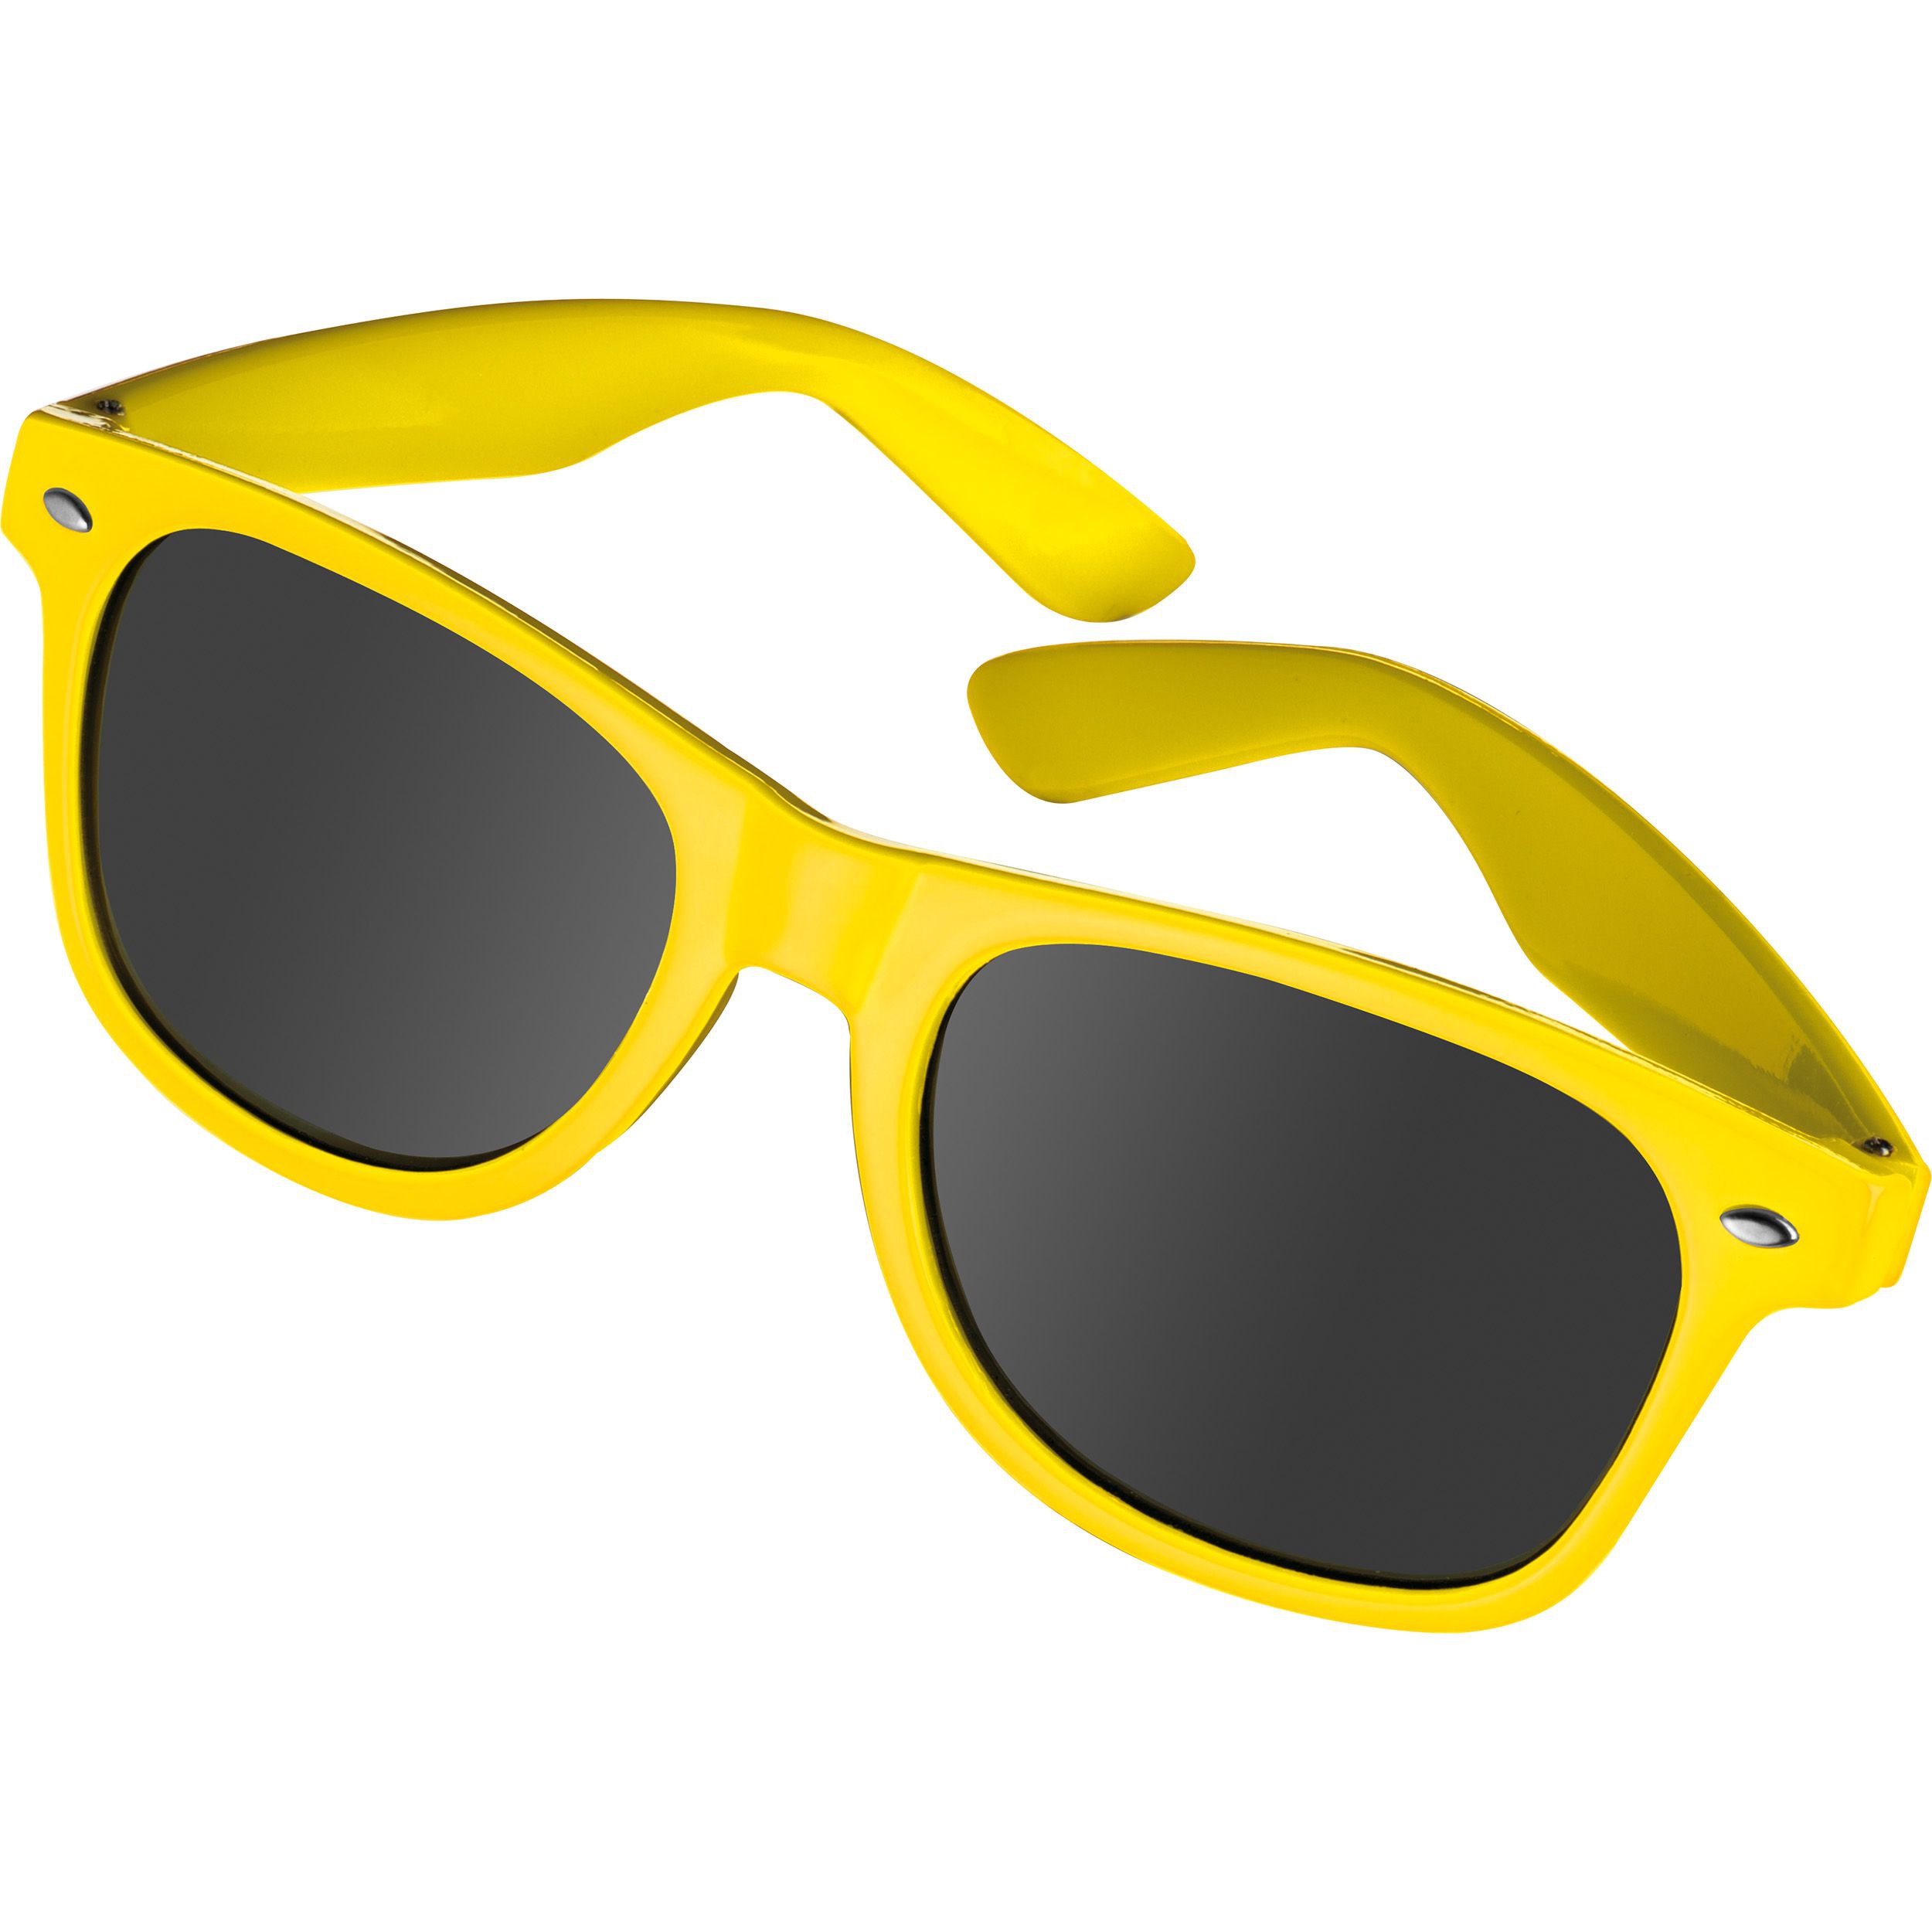 Sonnenbrille aus Kunststoff im "Nerdlook", UV 400 Schutz, gelb